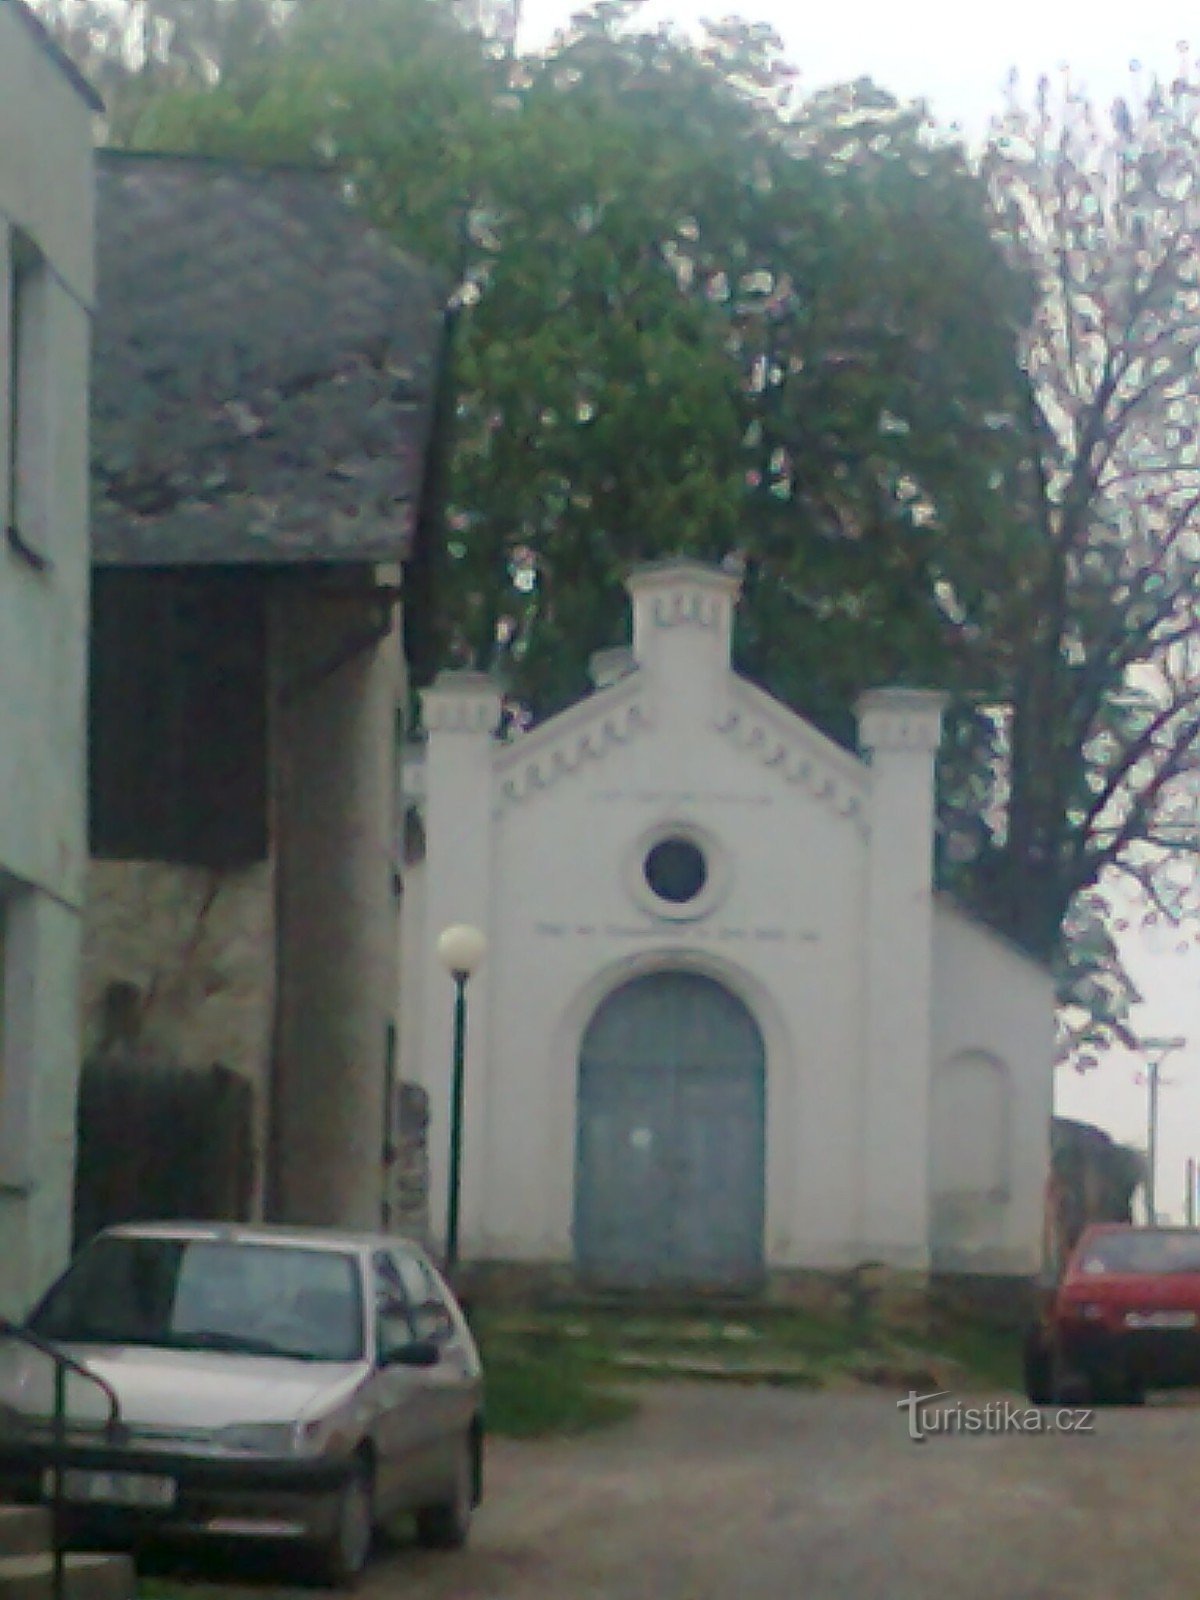 foto tirada da porta da frente de uma sinagoga judaica